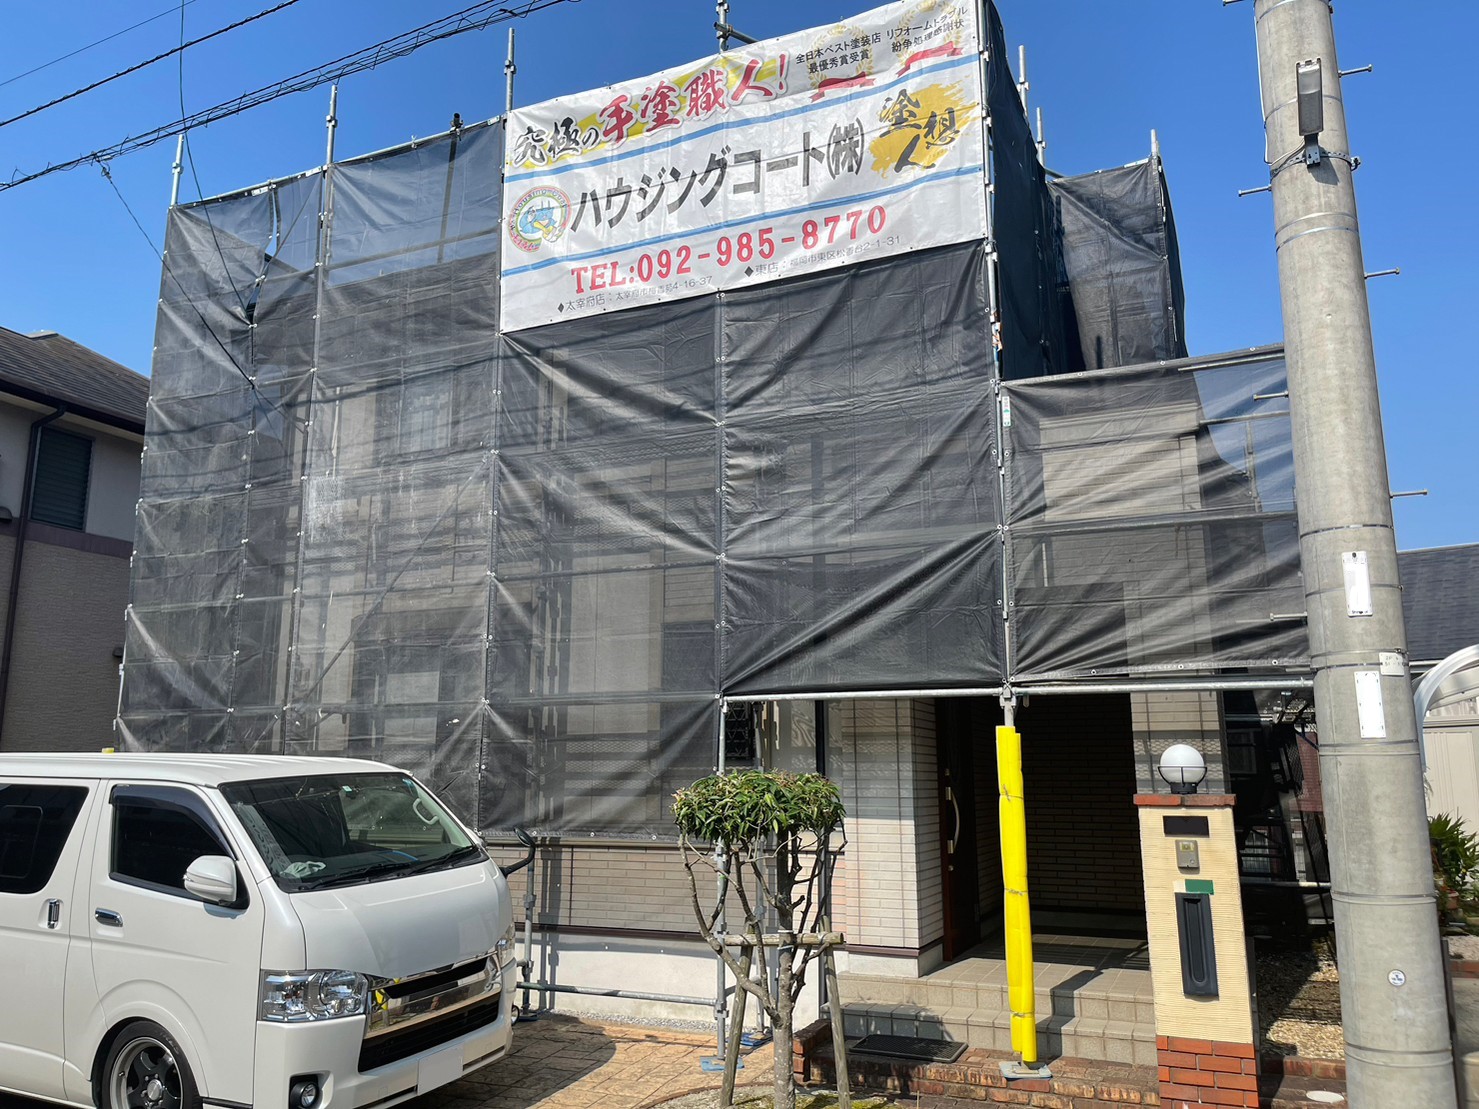 福岡県太宰府市石坂のM様邸をハウジングコート一押しの塗料を使用して外壁屋根を新築の様に塗装していきます。【ご来店より】